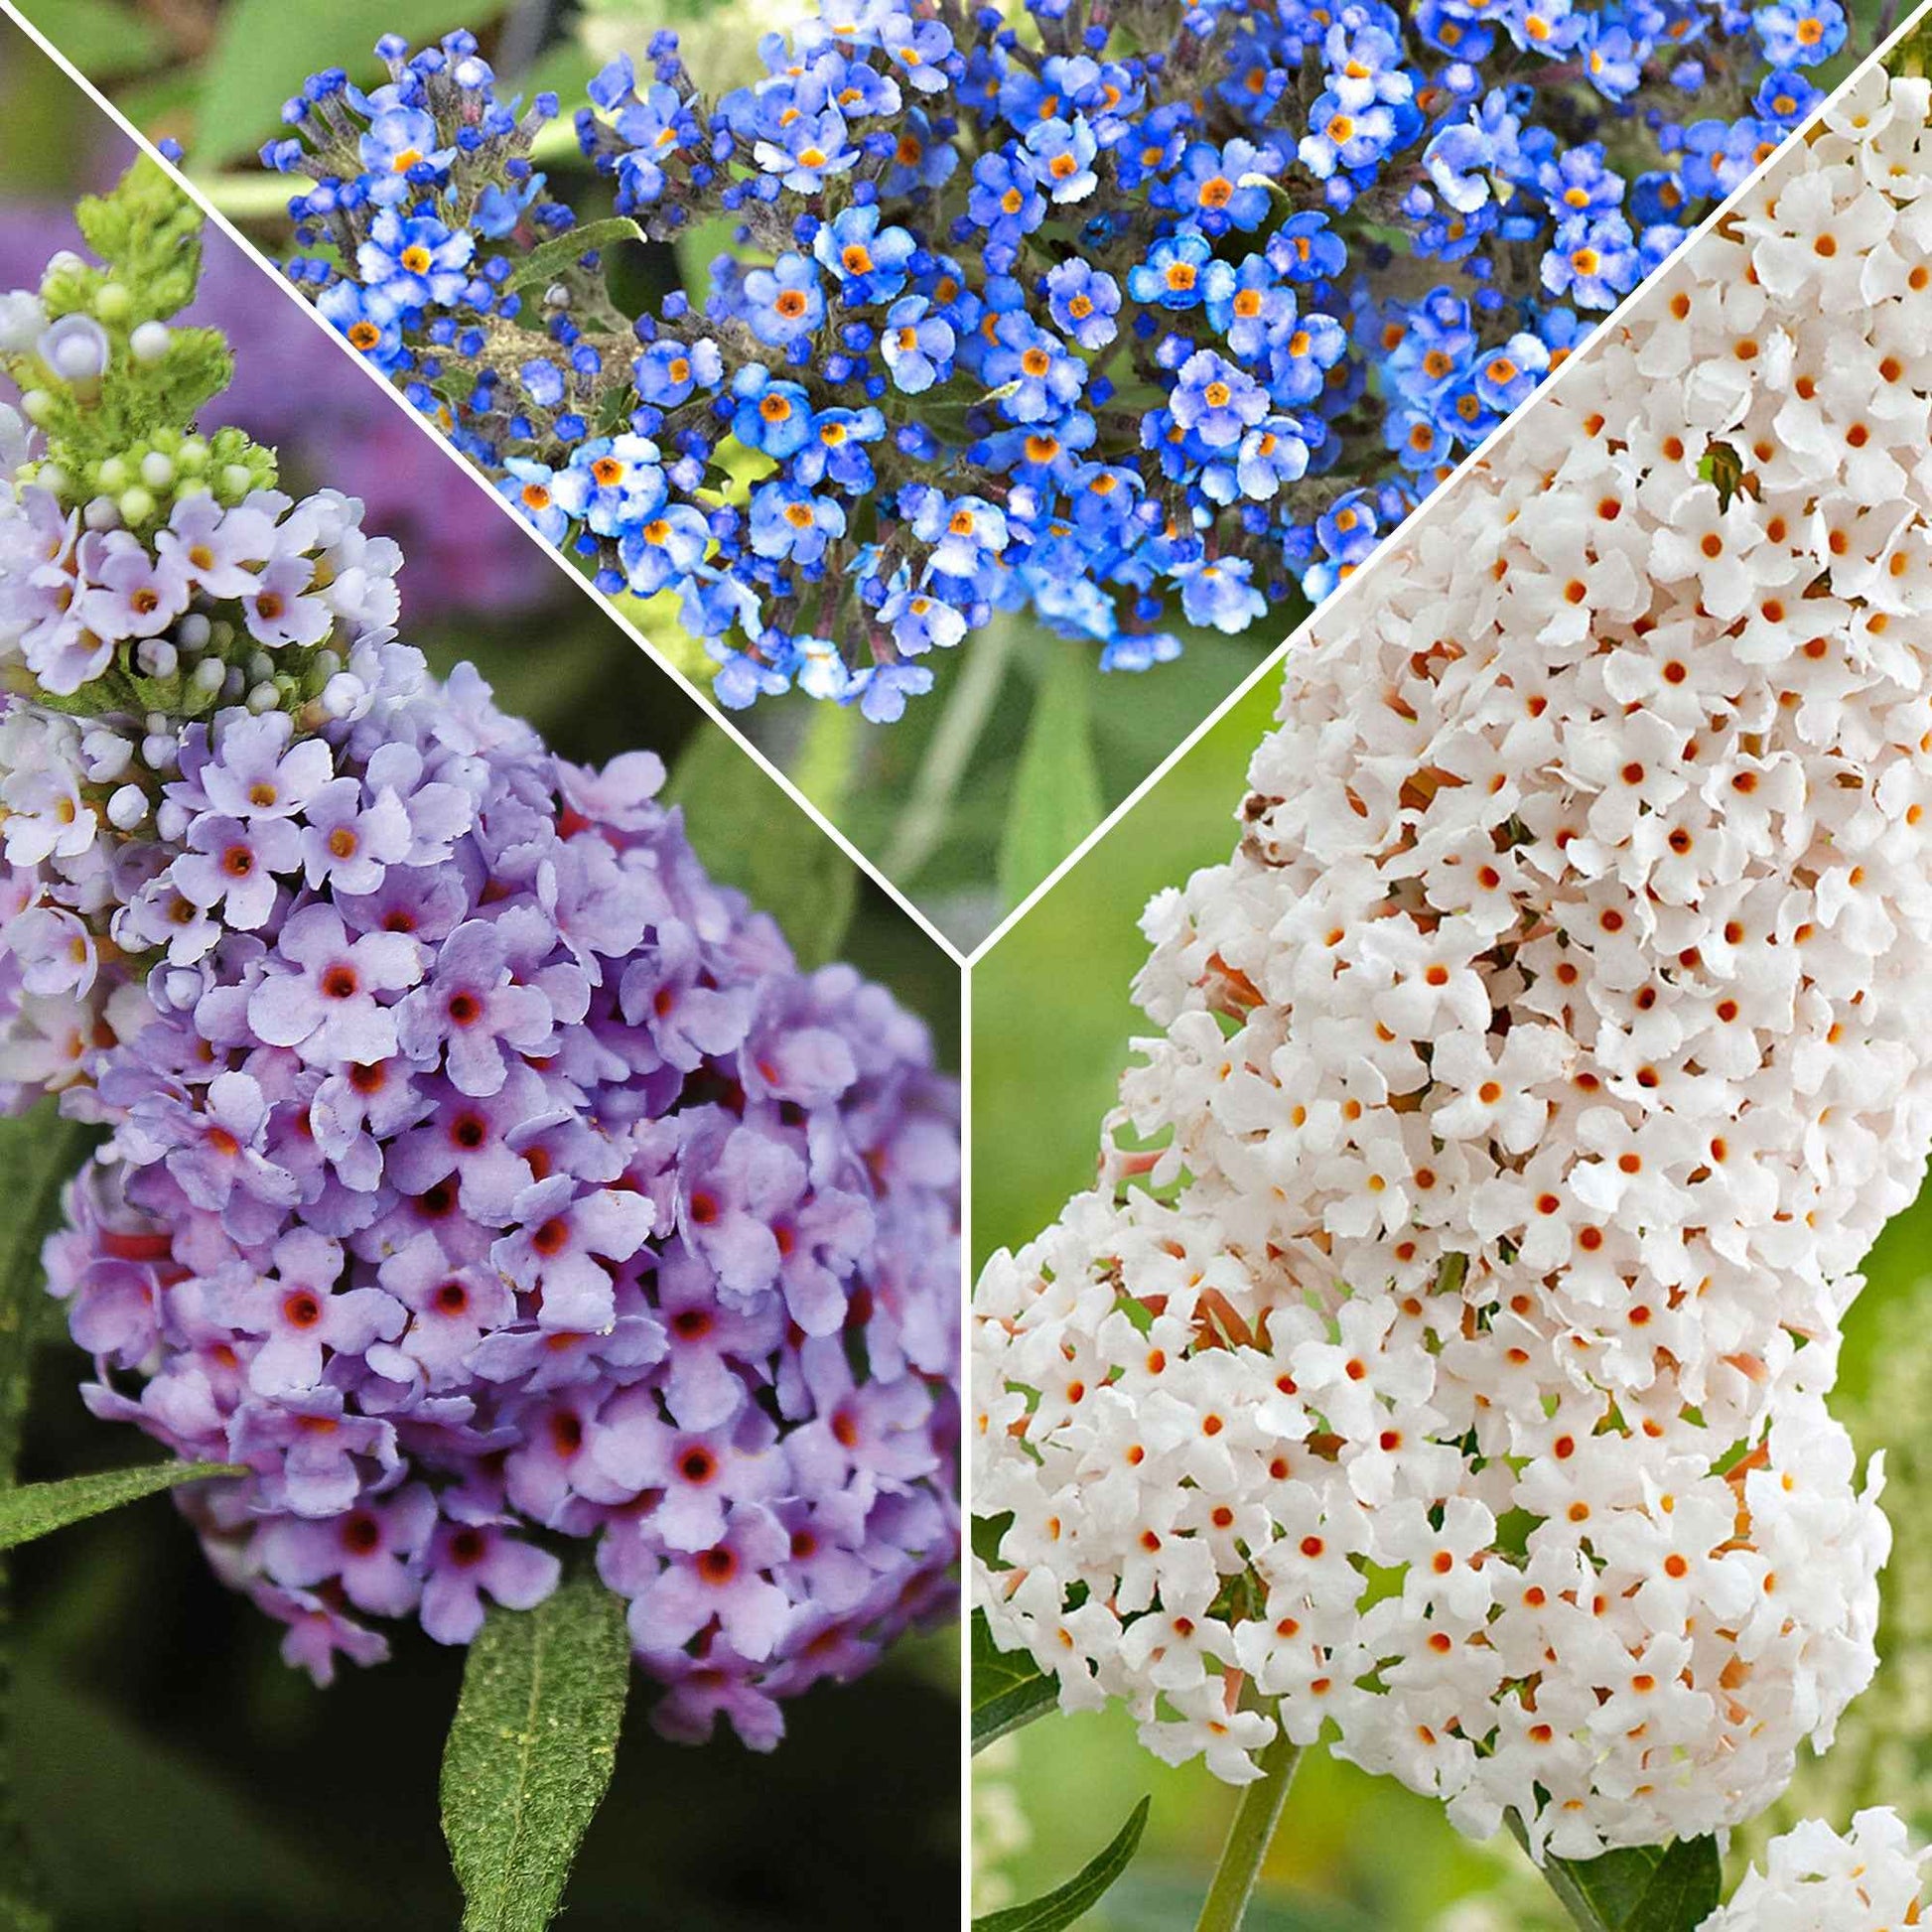 3x Arbre à papillons Buddleja 'Lilac Turtle' + 'White Swan' + 'Blue Sarah' bleu-violet-blanc - Buissons fleuris